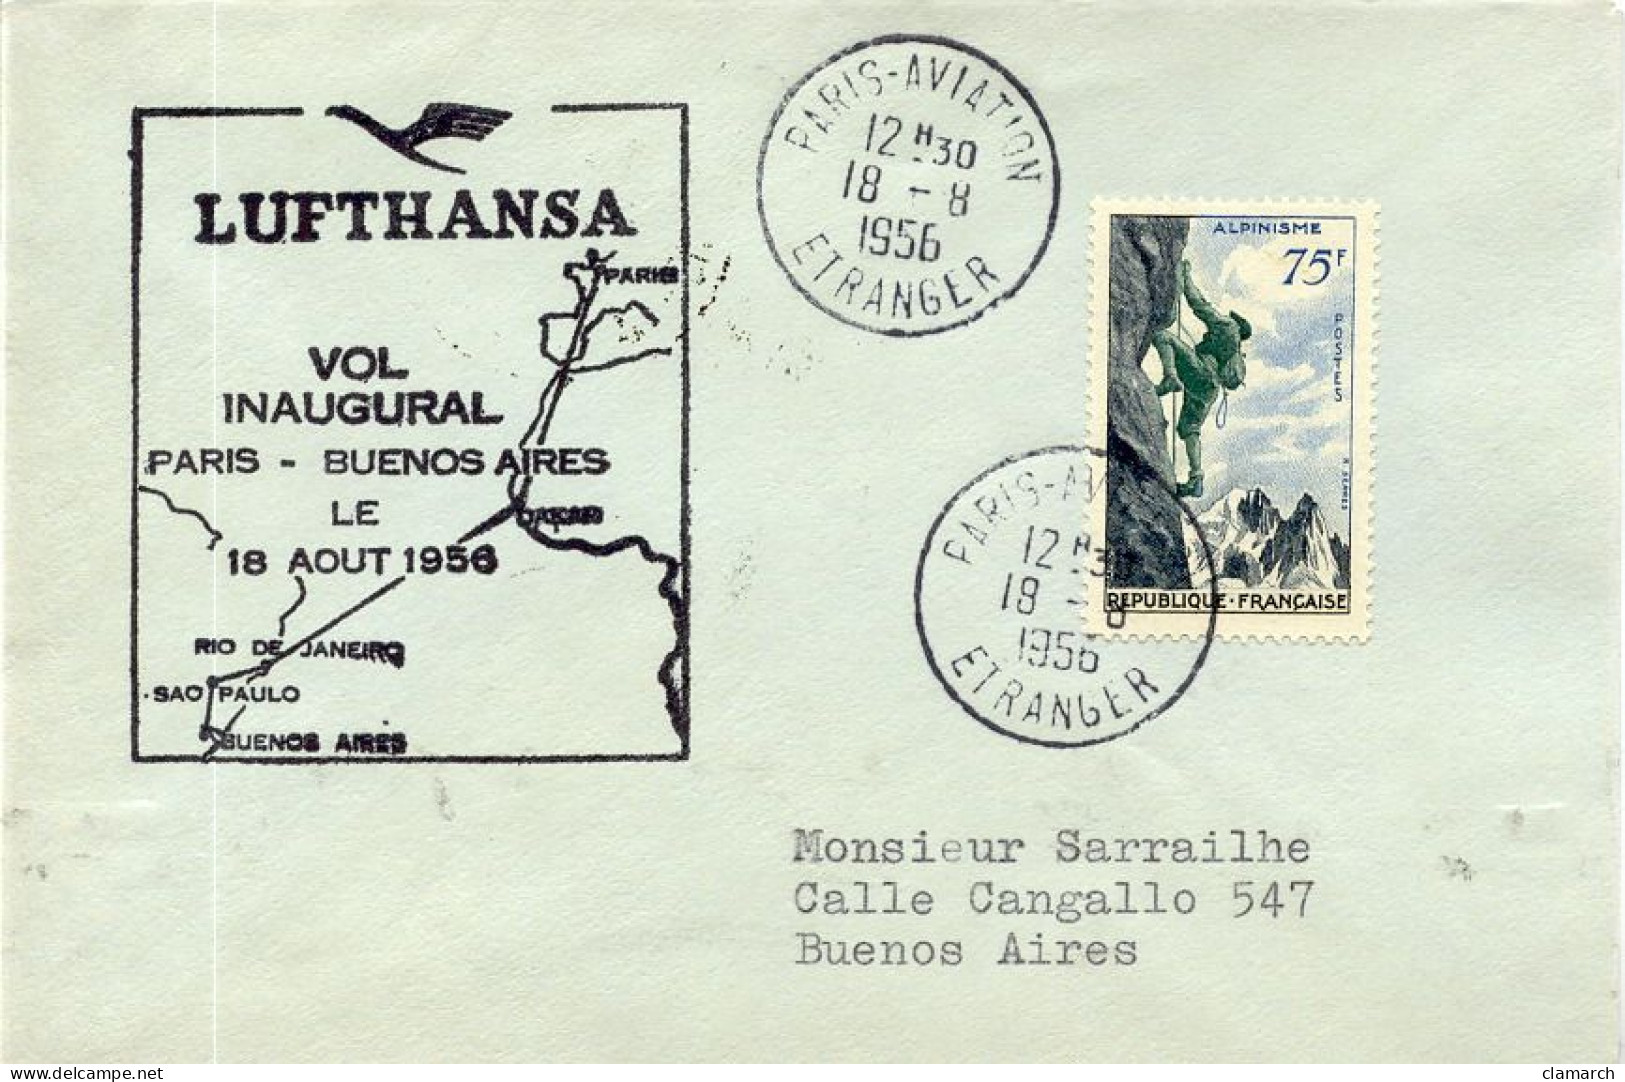 Aérophilatélie-Vol Inaugural Par Lufthansa PARIS-BUENOS AIRES Le 8 Aout 1956-cachet De Paris Du 18.08.56 - Primi Voli